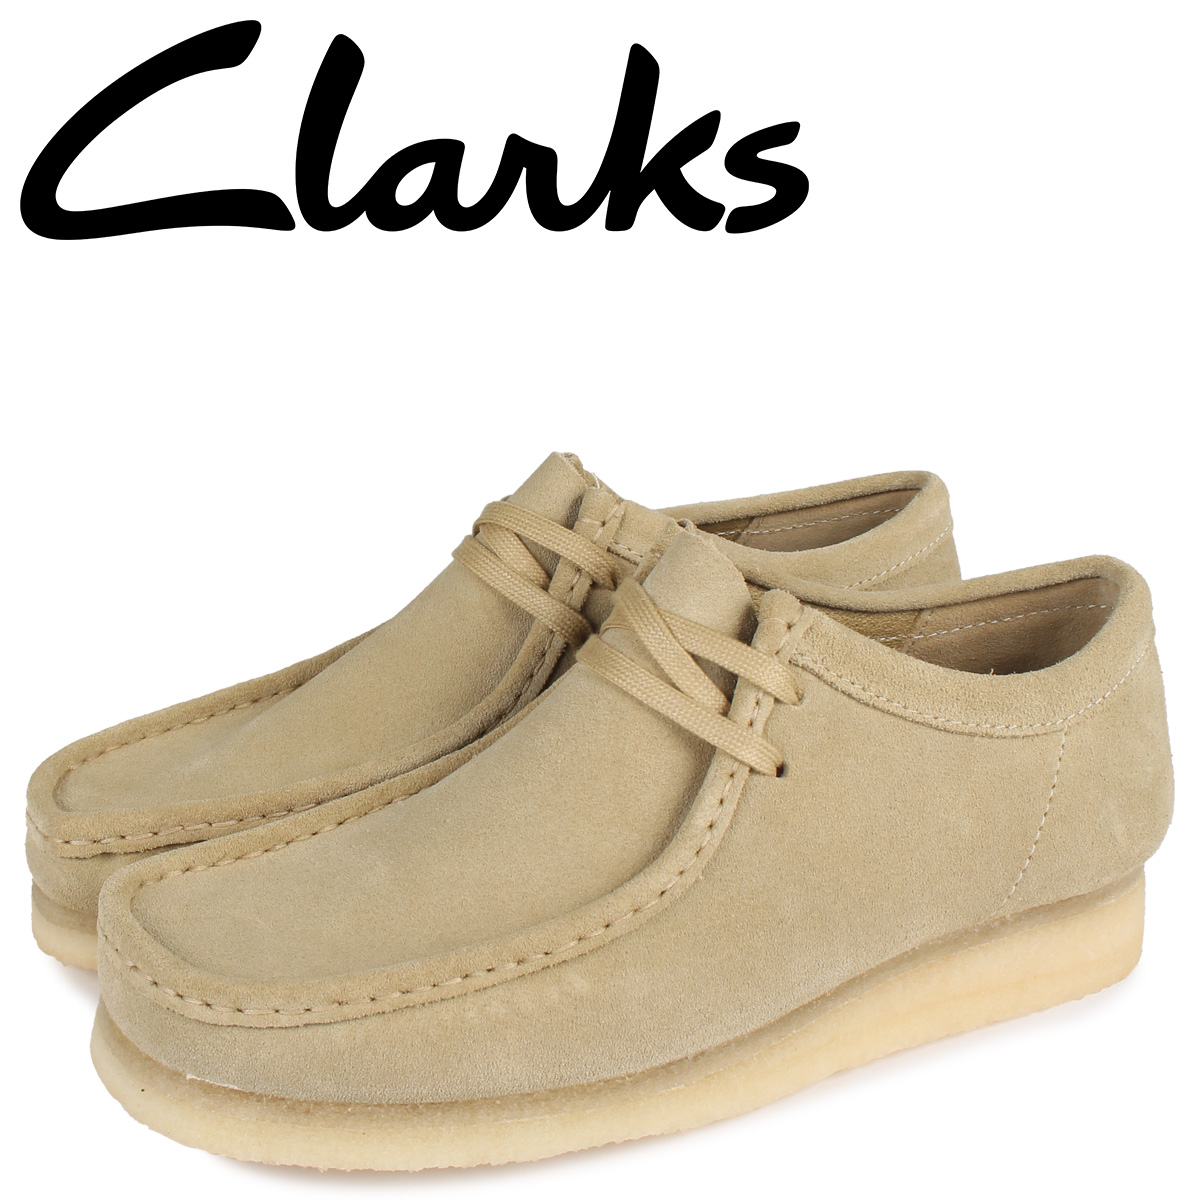 clarks originals ワラビー uk5 24cm 希少サイズ ブーツ 靴 レディース 公式 販売